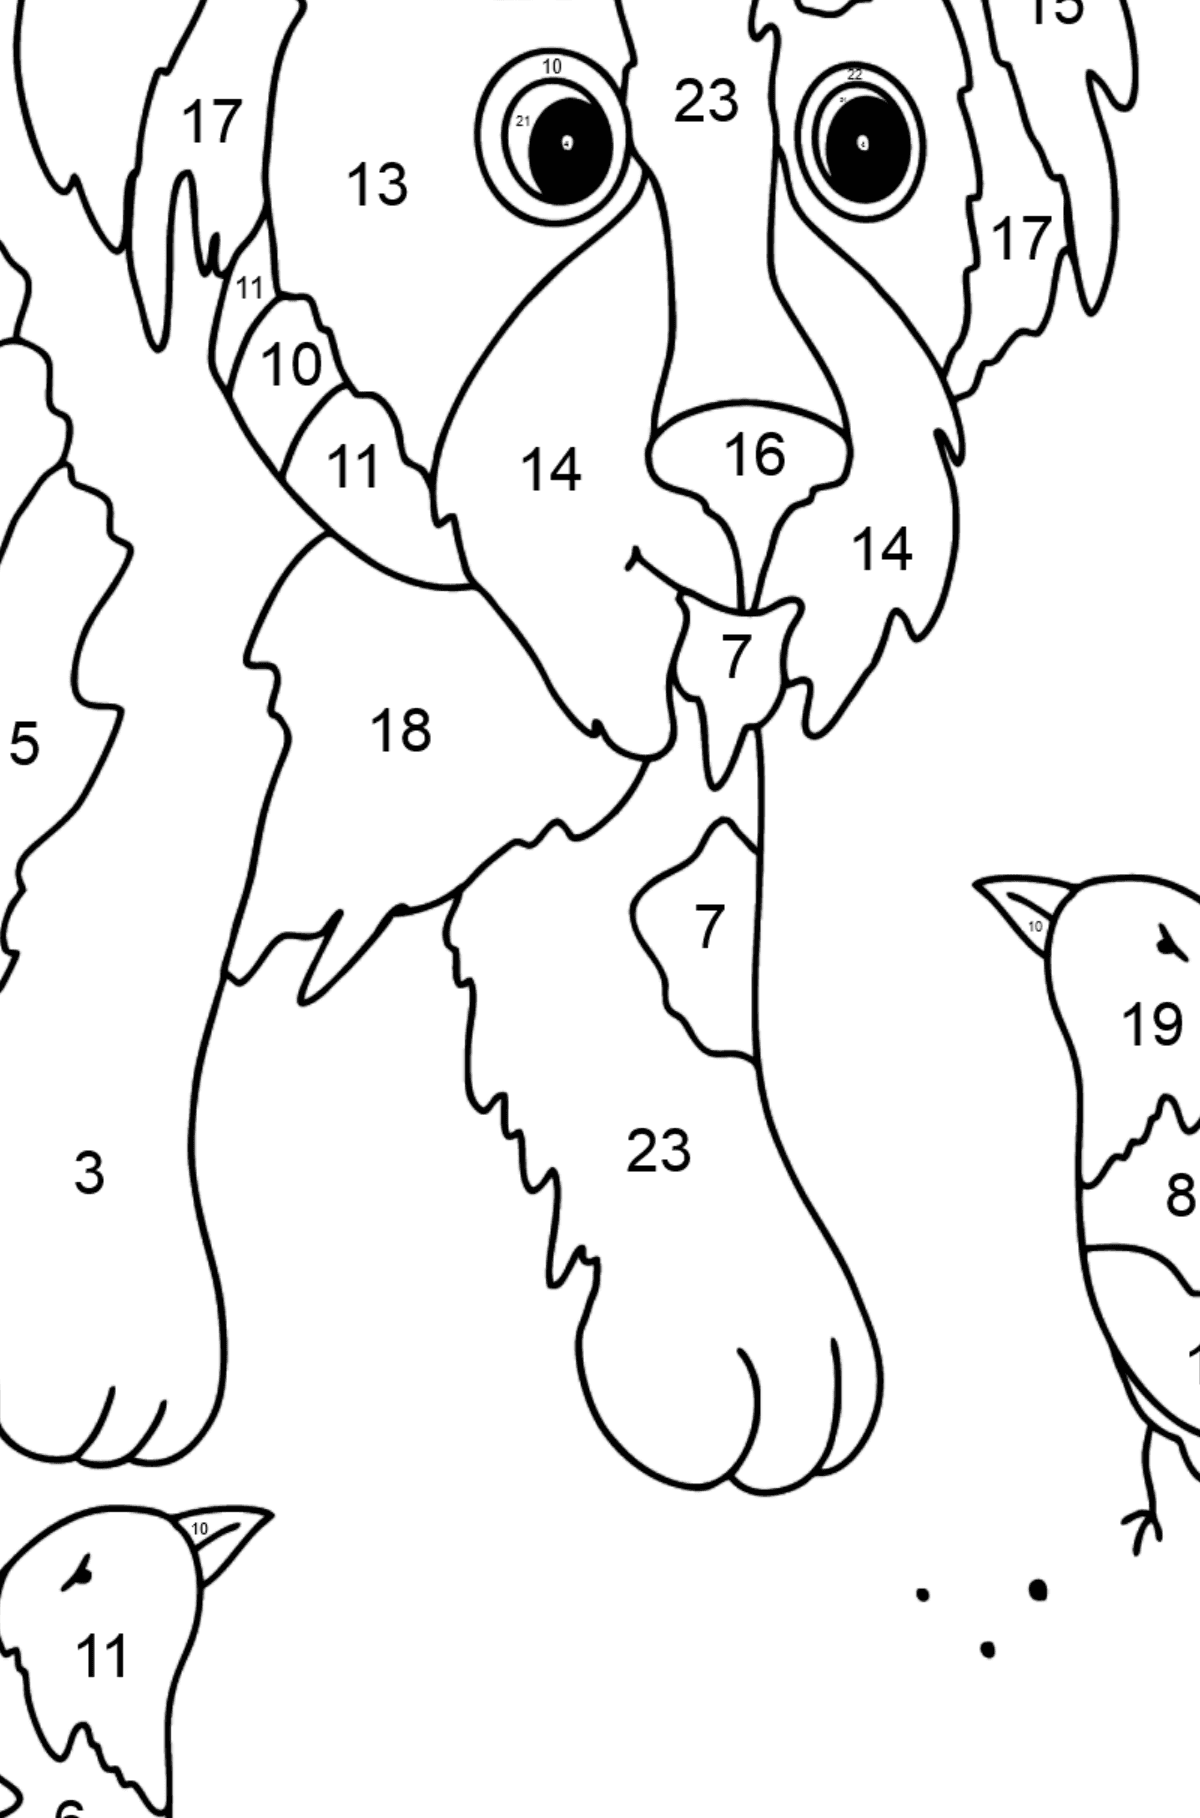 Boyama sayfası sevimli köpek yavrusu (zor) - Sayılarla Boyama çocuklar için